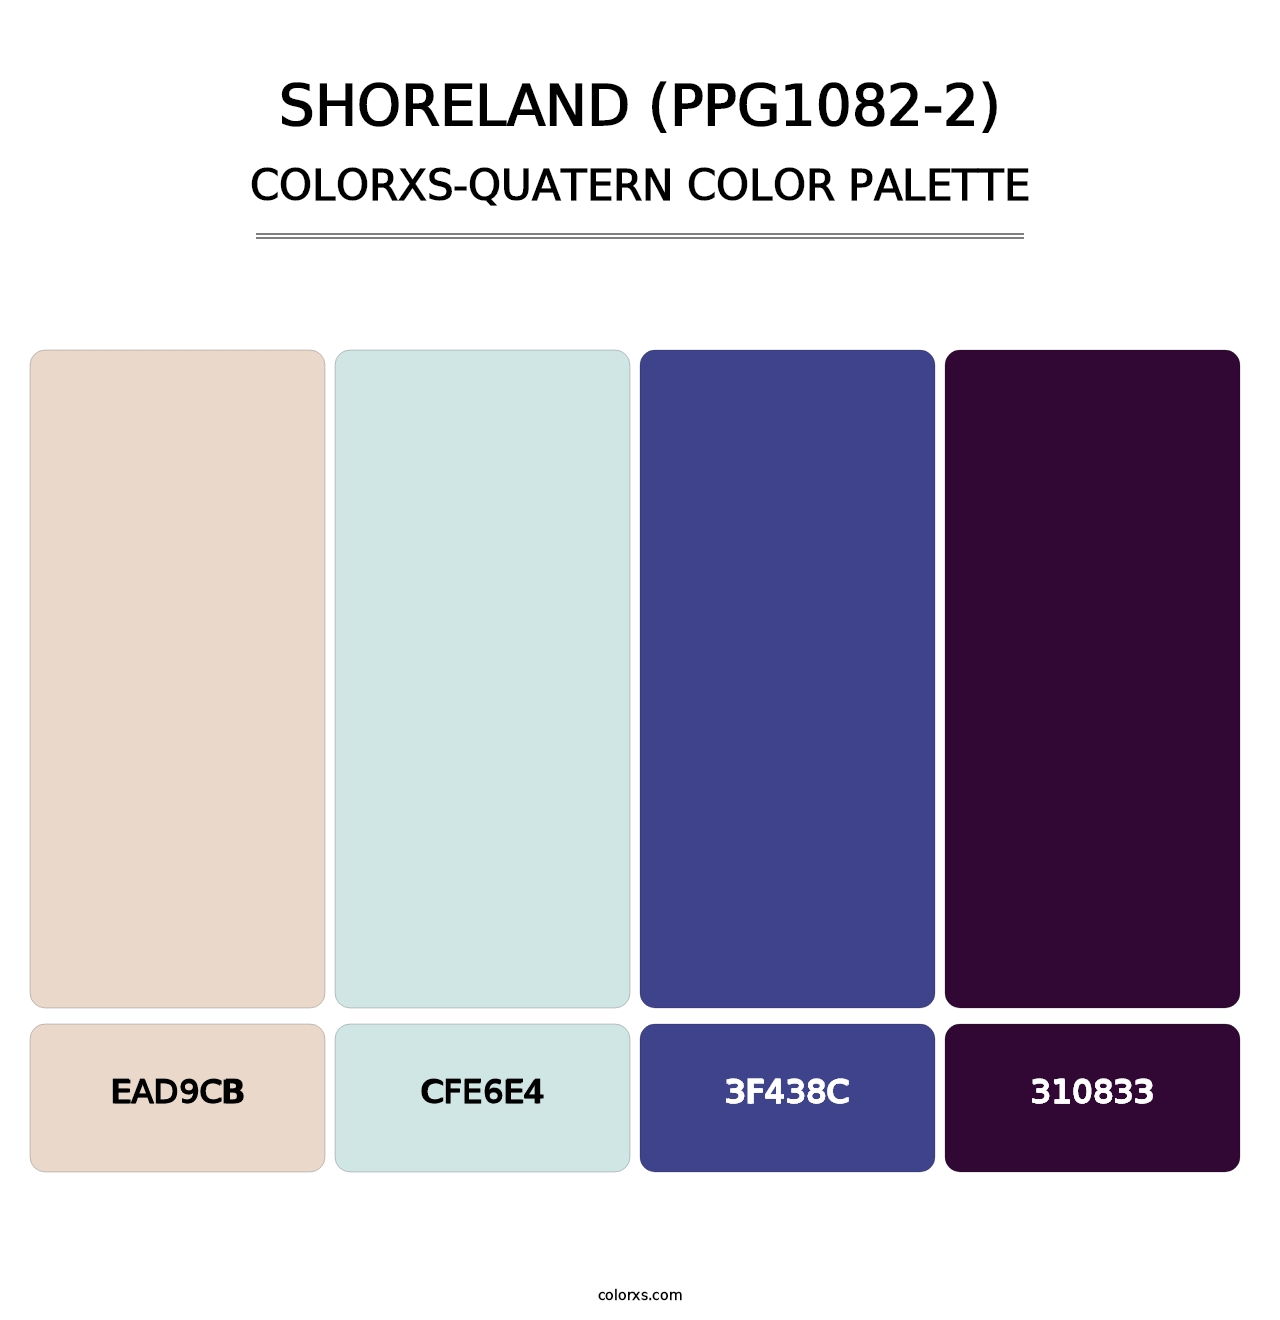 Shoreland (PPG1082-2) - Colorxs Quatern Palette